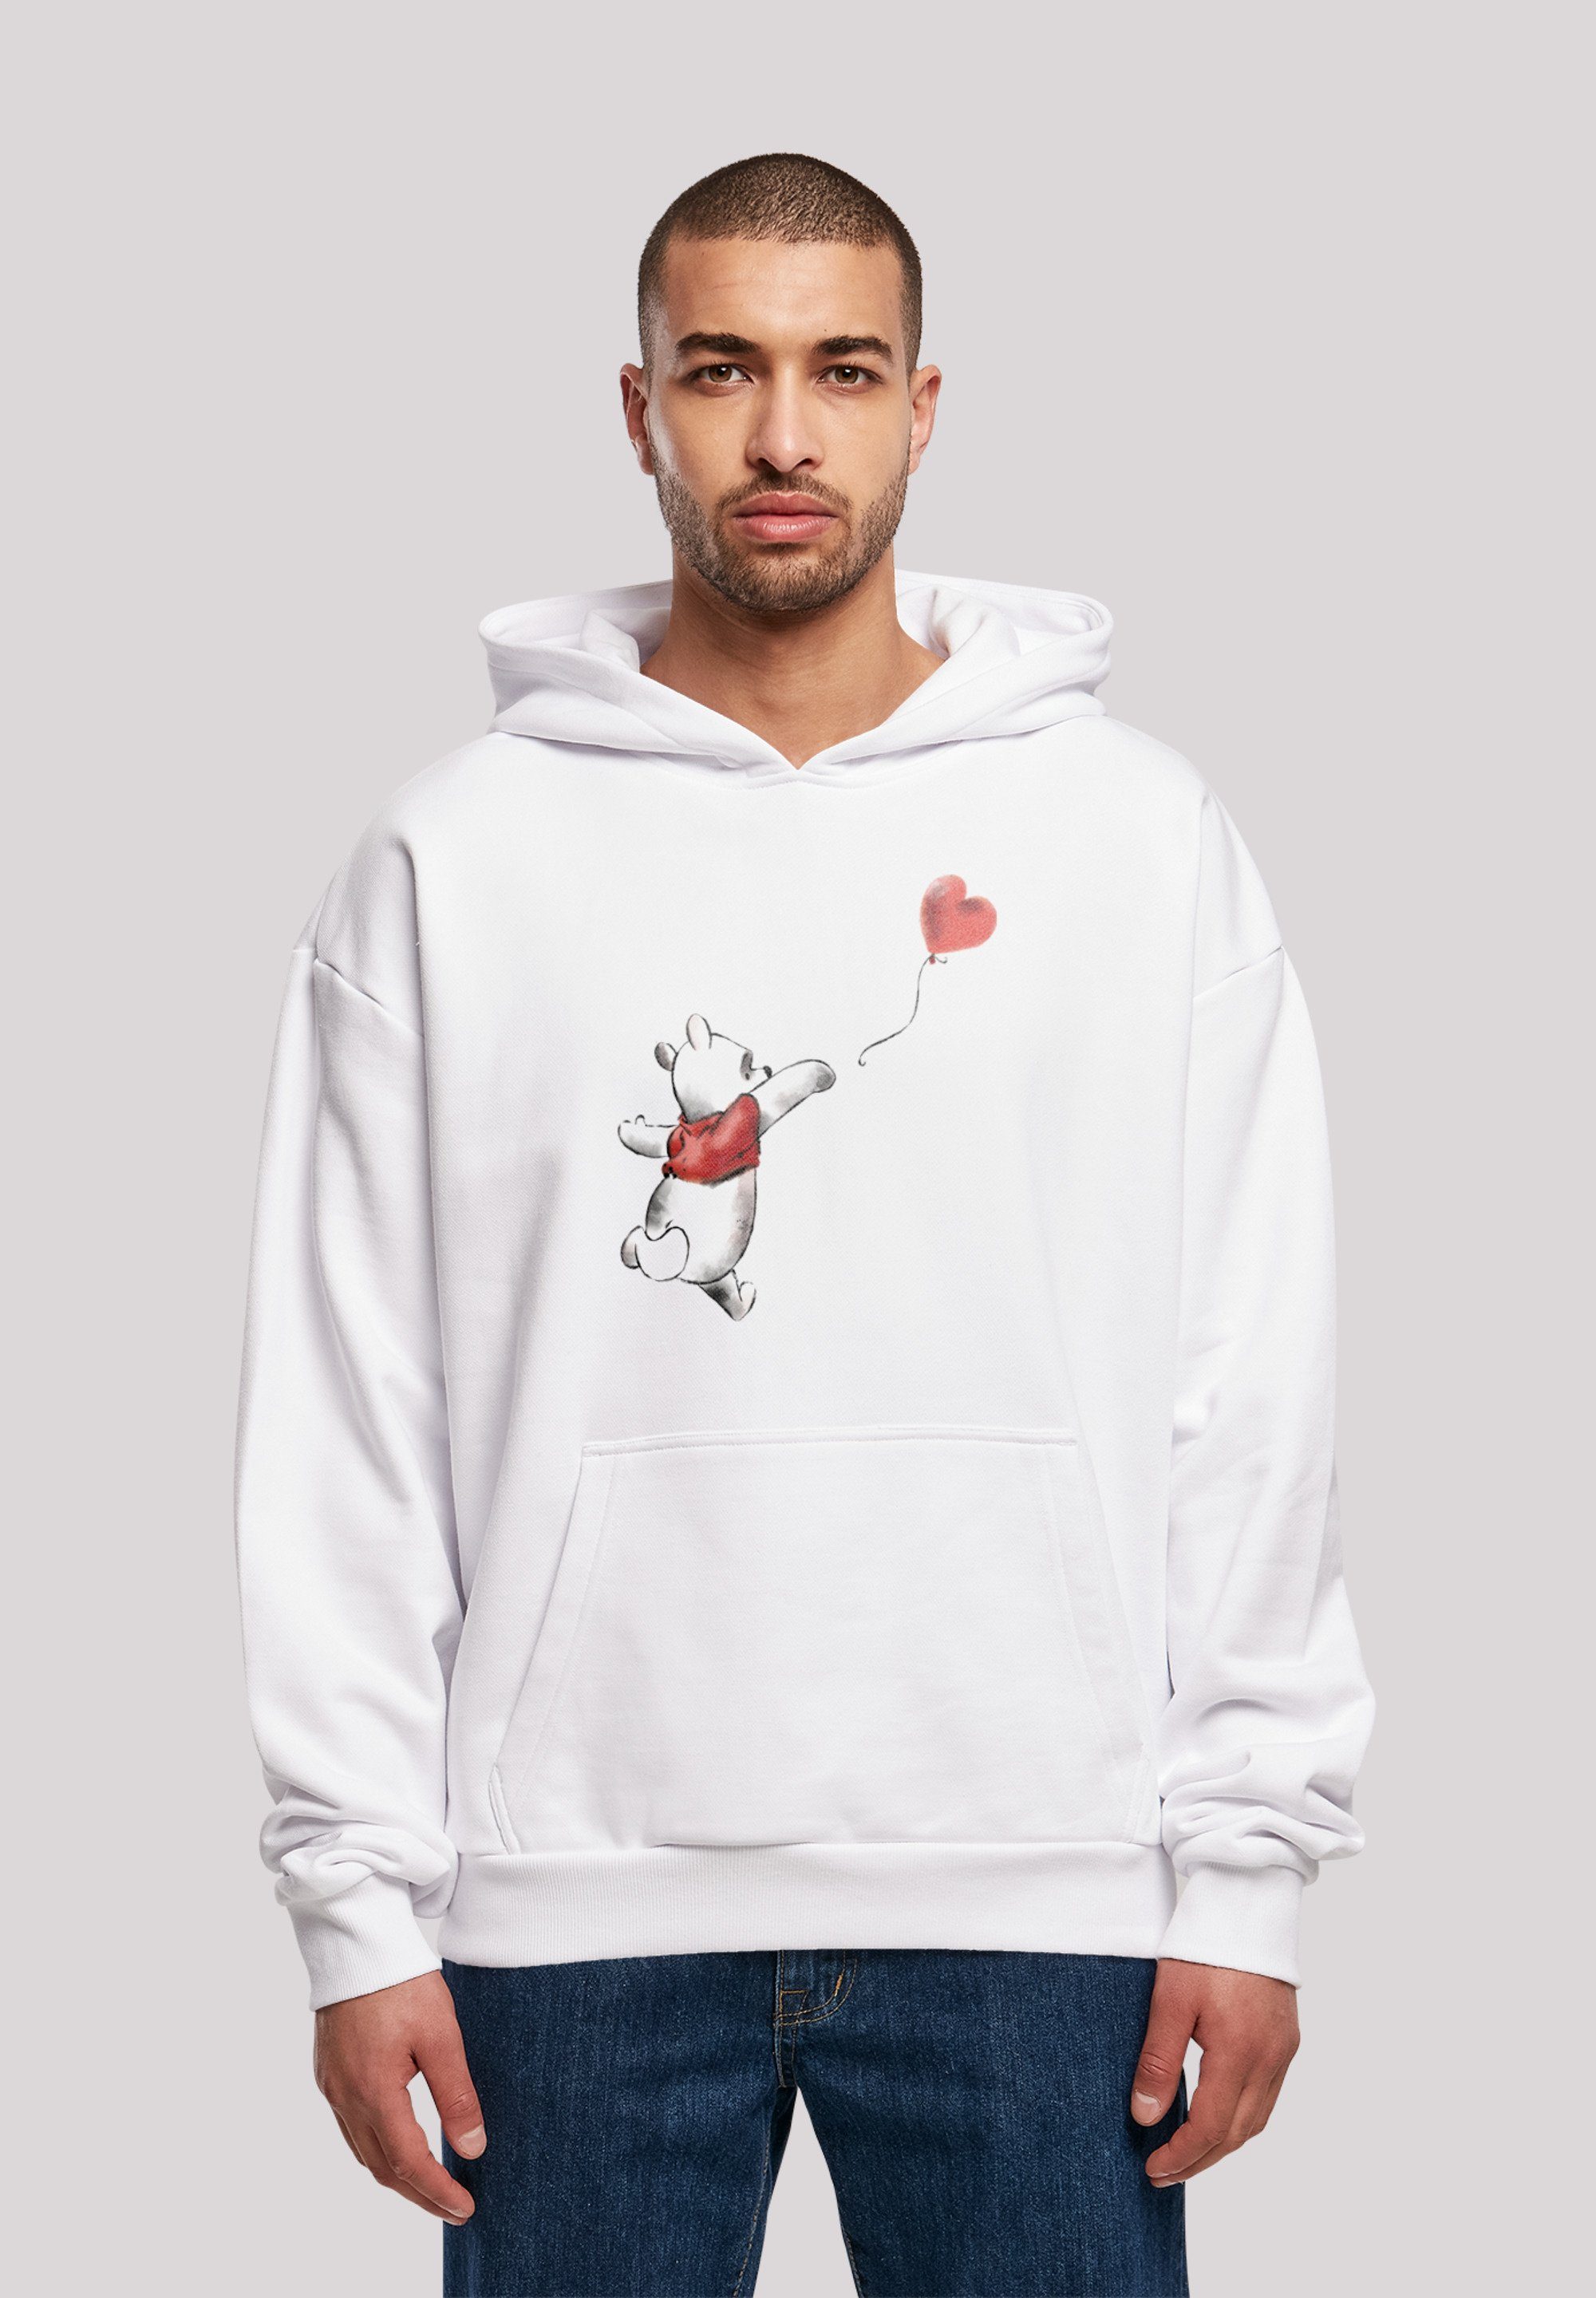 F4NT4STIC Sweatshirt Disney Winnie The Pooh & Balloon Herren,Premium Merch,Oversize,Kapuzenpullover,Bedruckt weiß